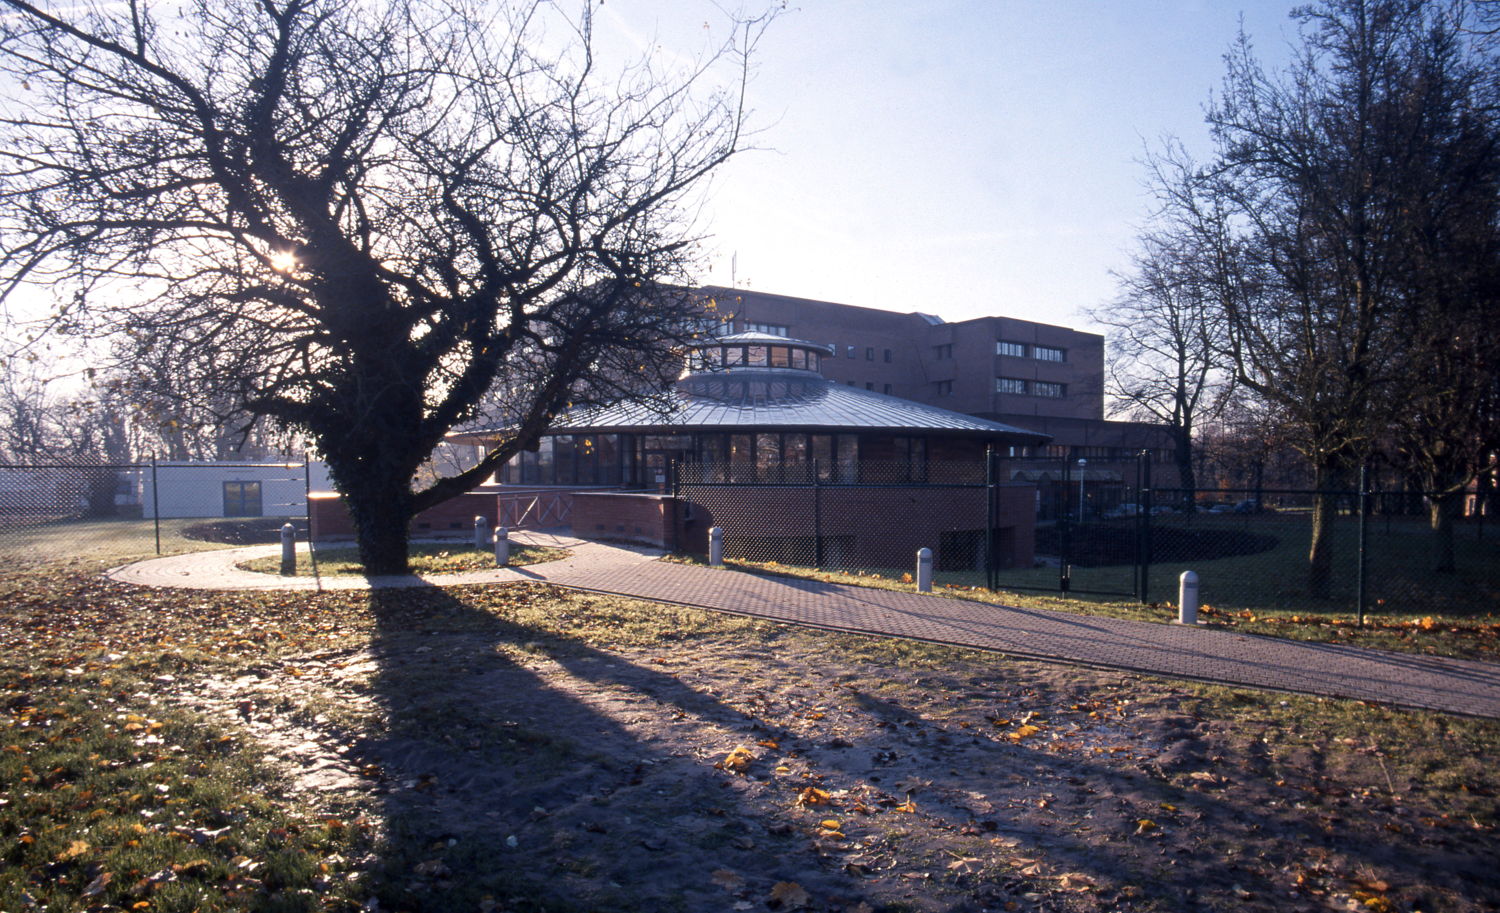 Hôpital et école avant le 5ème étage
©Huderf-Ukzkf